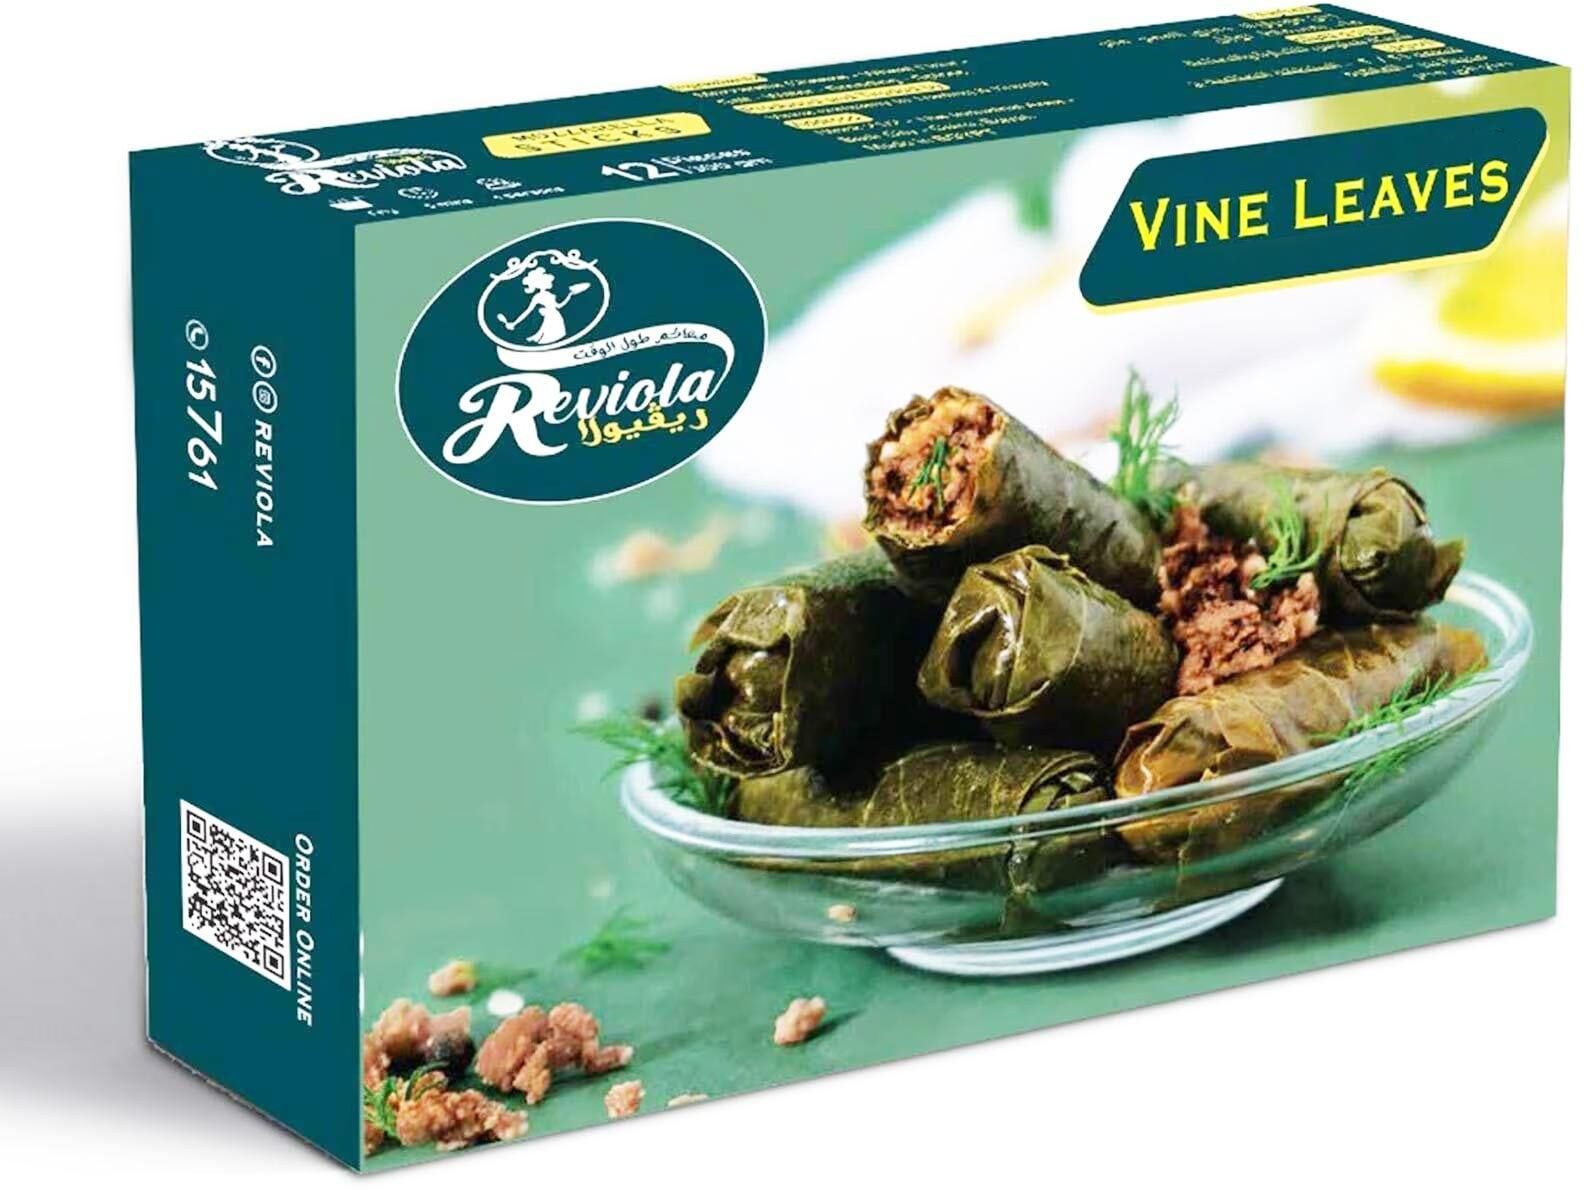 Reviola Vine Leaves with Olive Oil - 500 gram